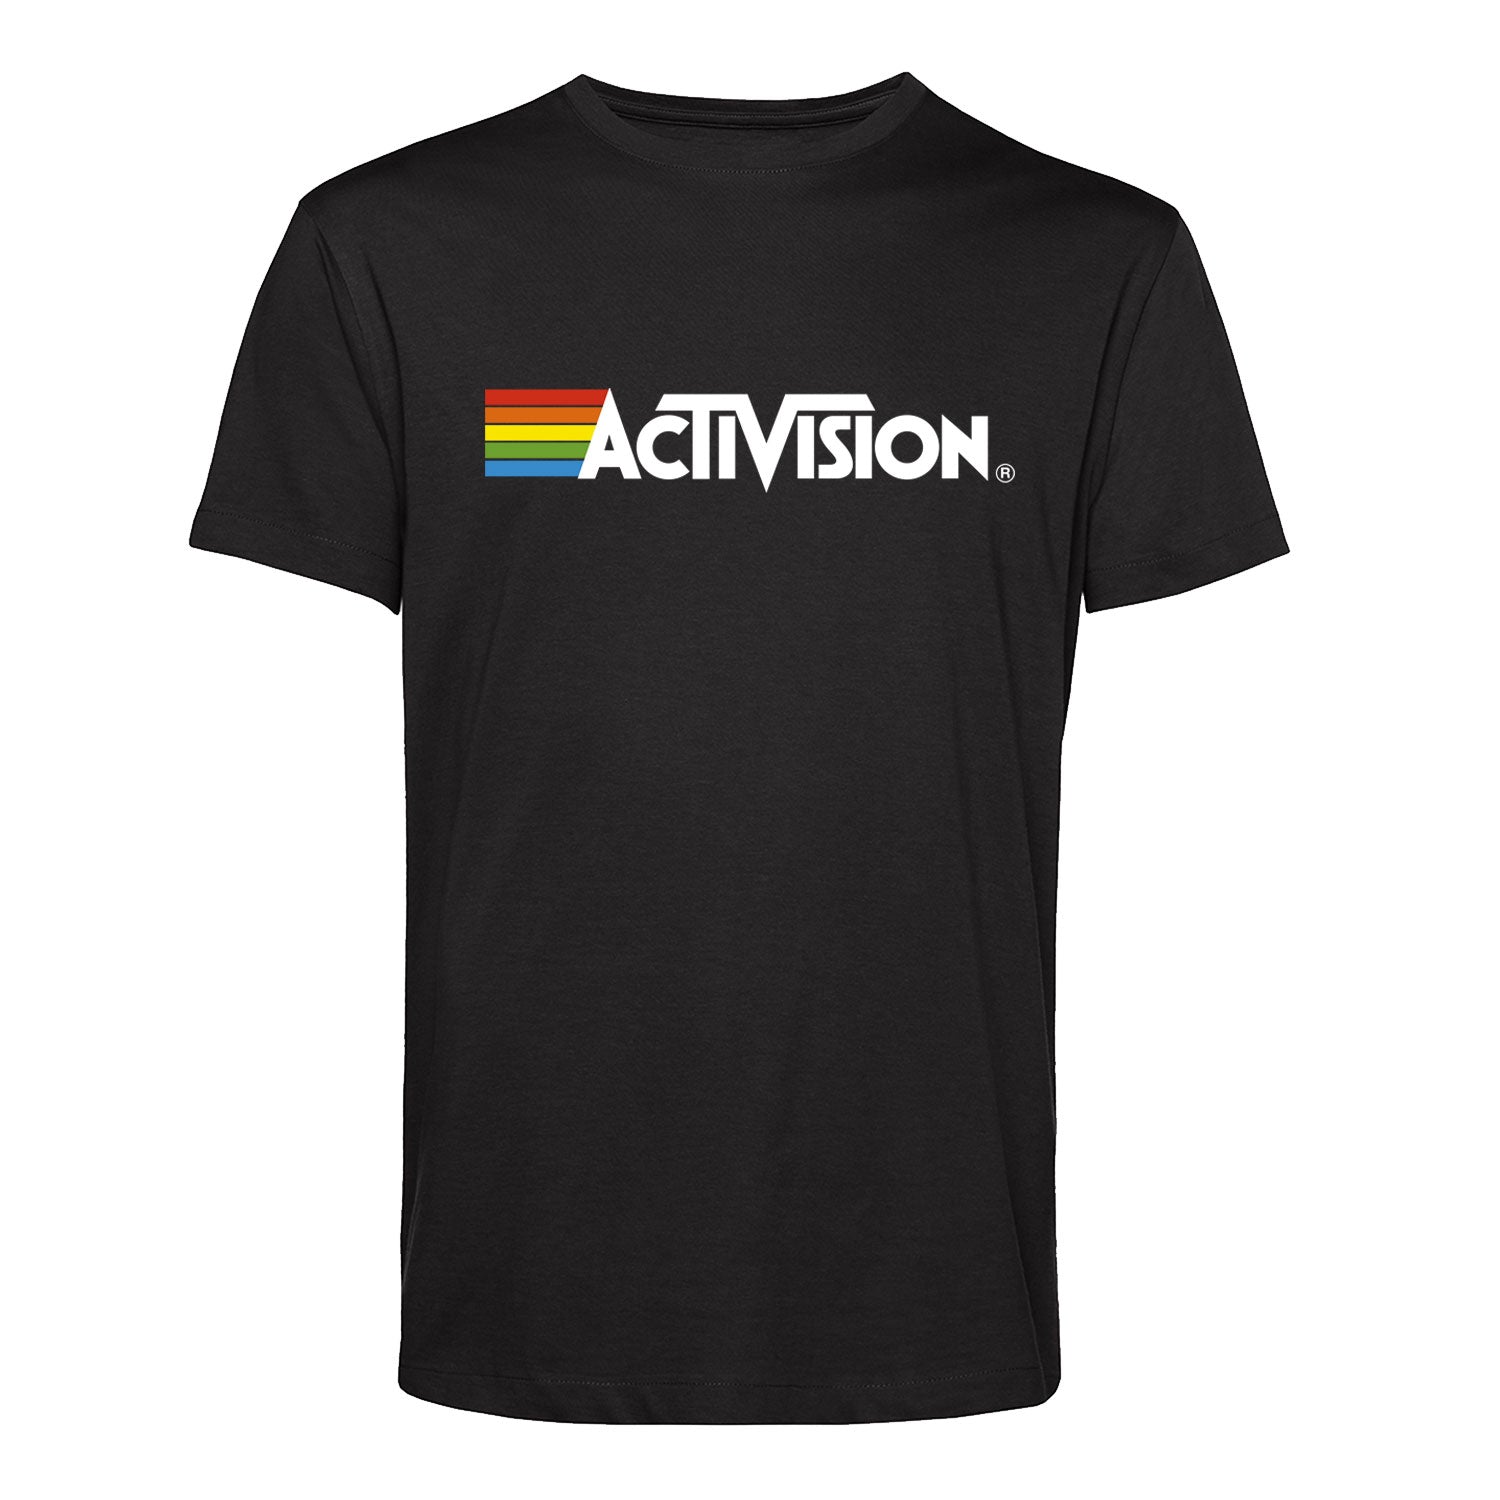 Activision Men's T-Shirt, Black Unisex Style